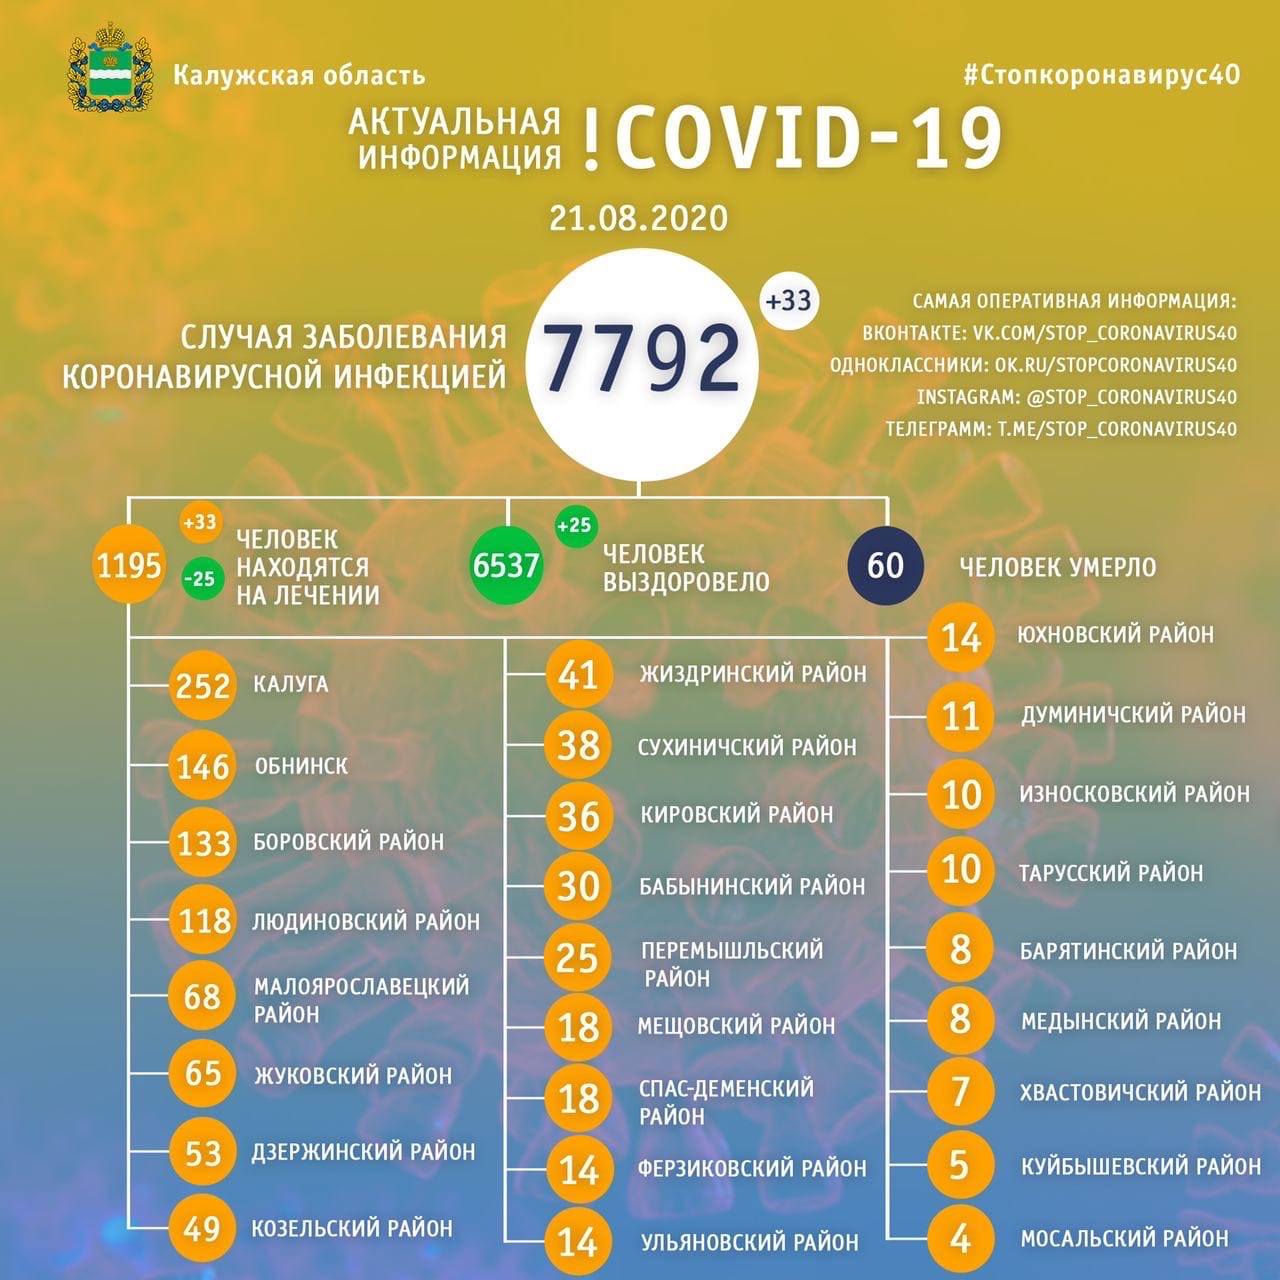 Официальная статистика по коронавирусу в Калужской области от регионального оперативного штаба на 21 августа 2020 года.